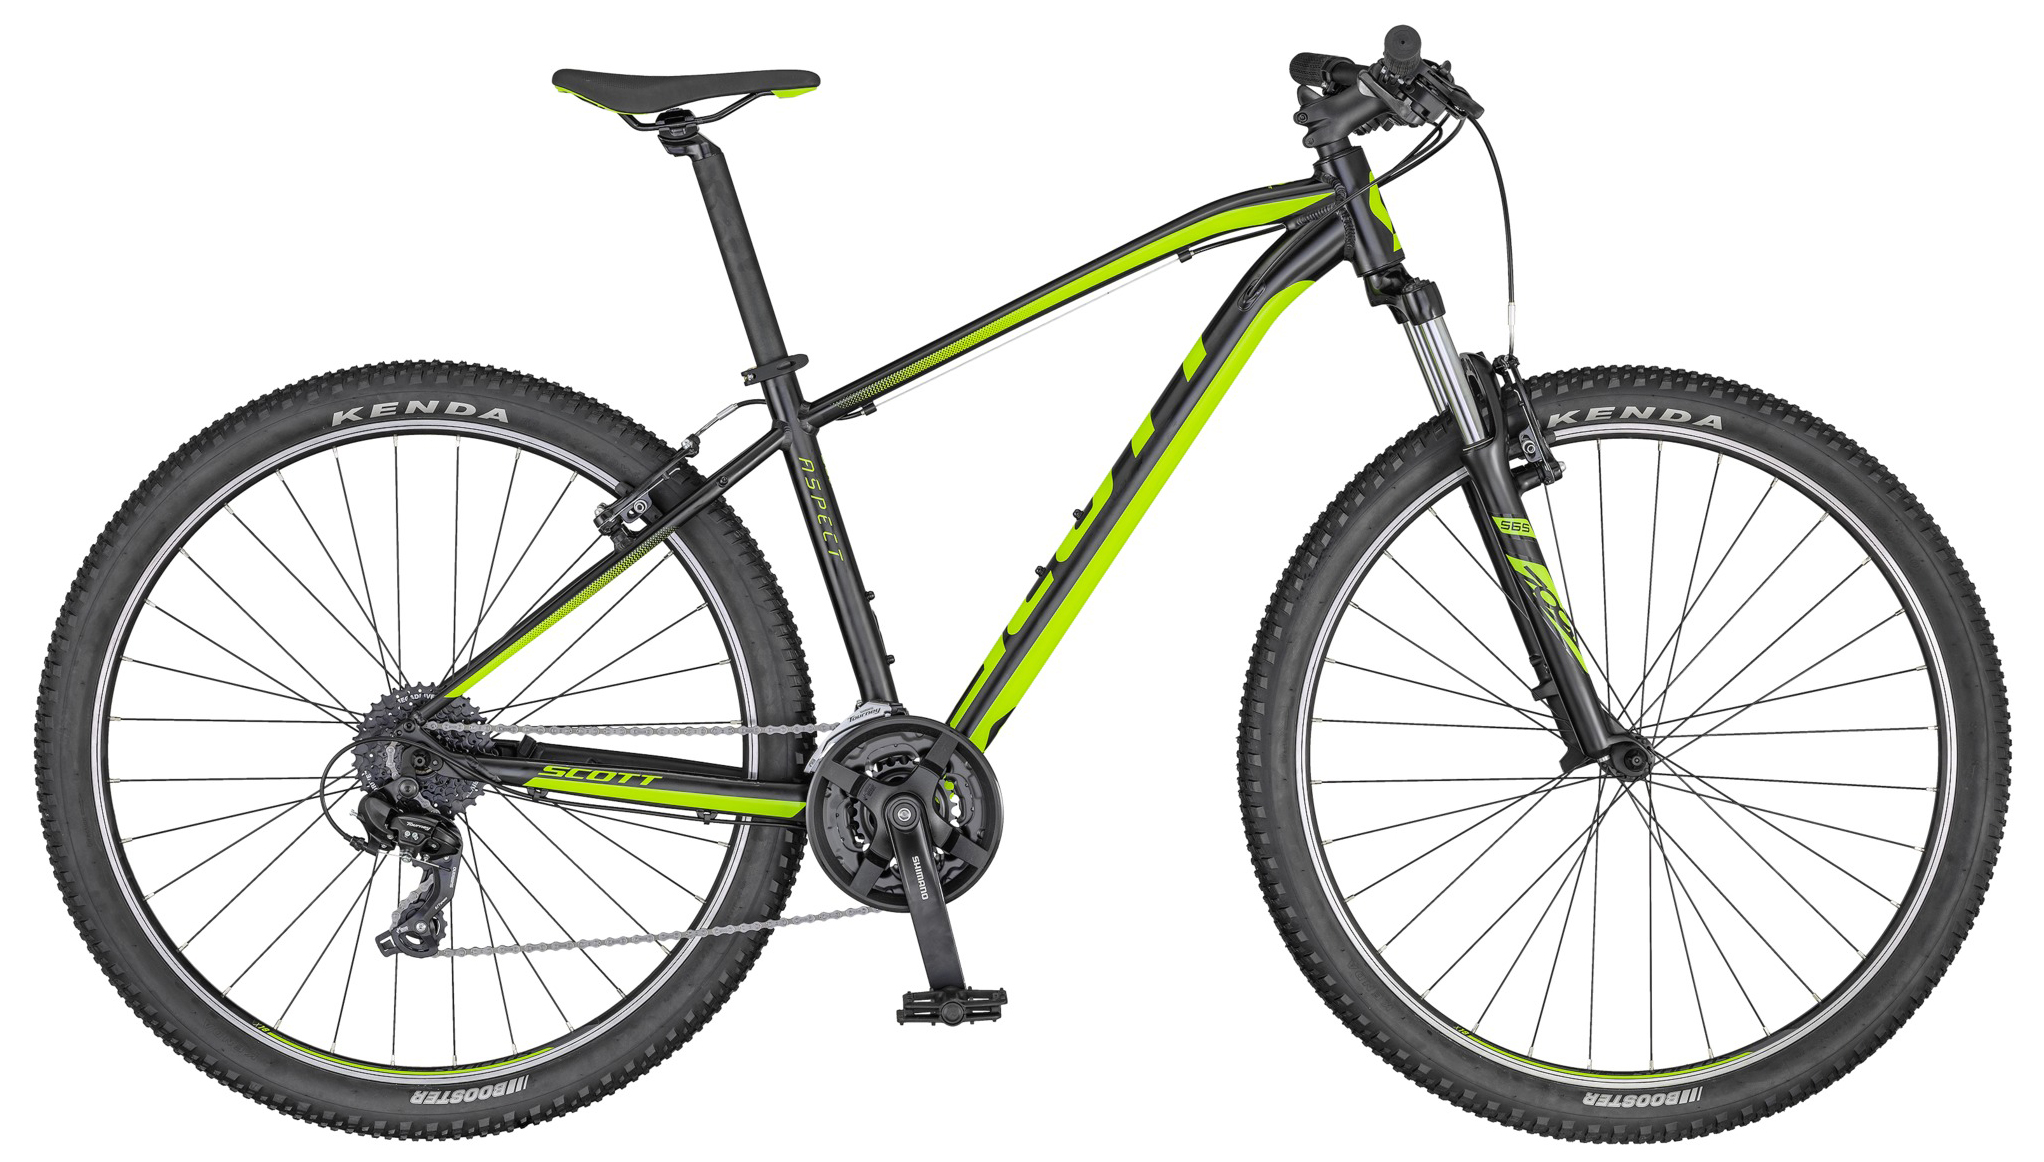  Отзывы о Горном велосипеде Scott Aspect 780 2020